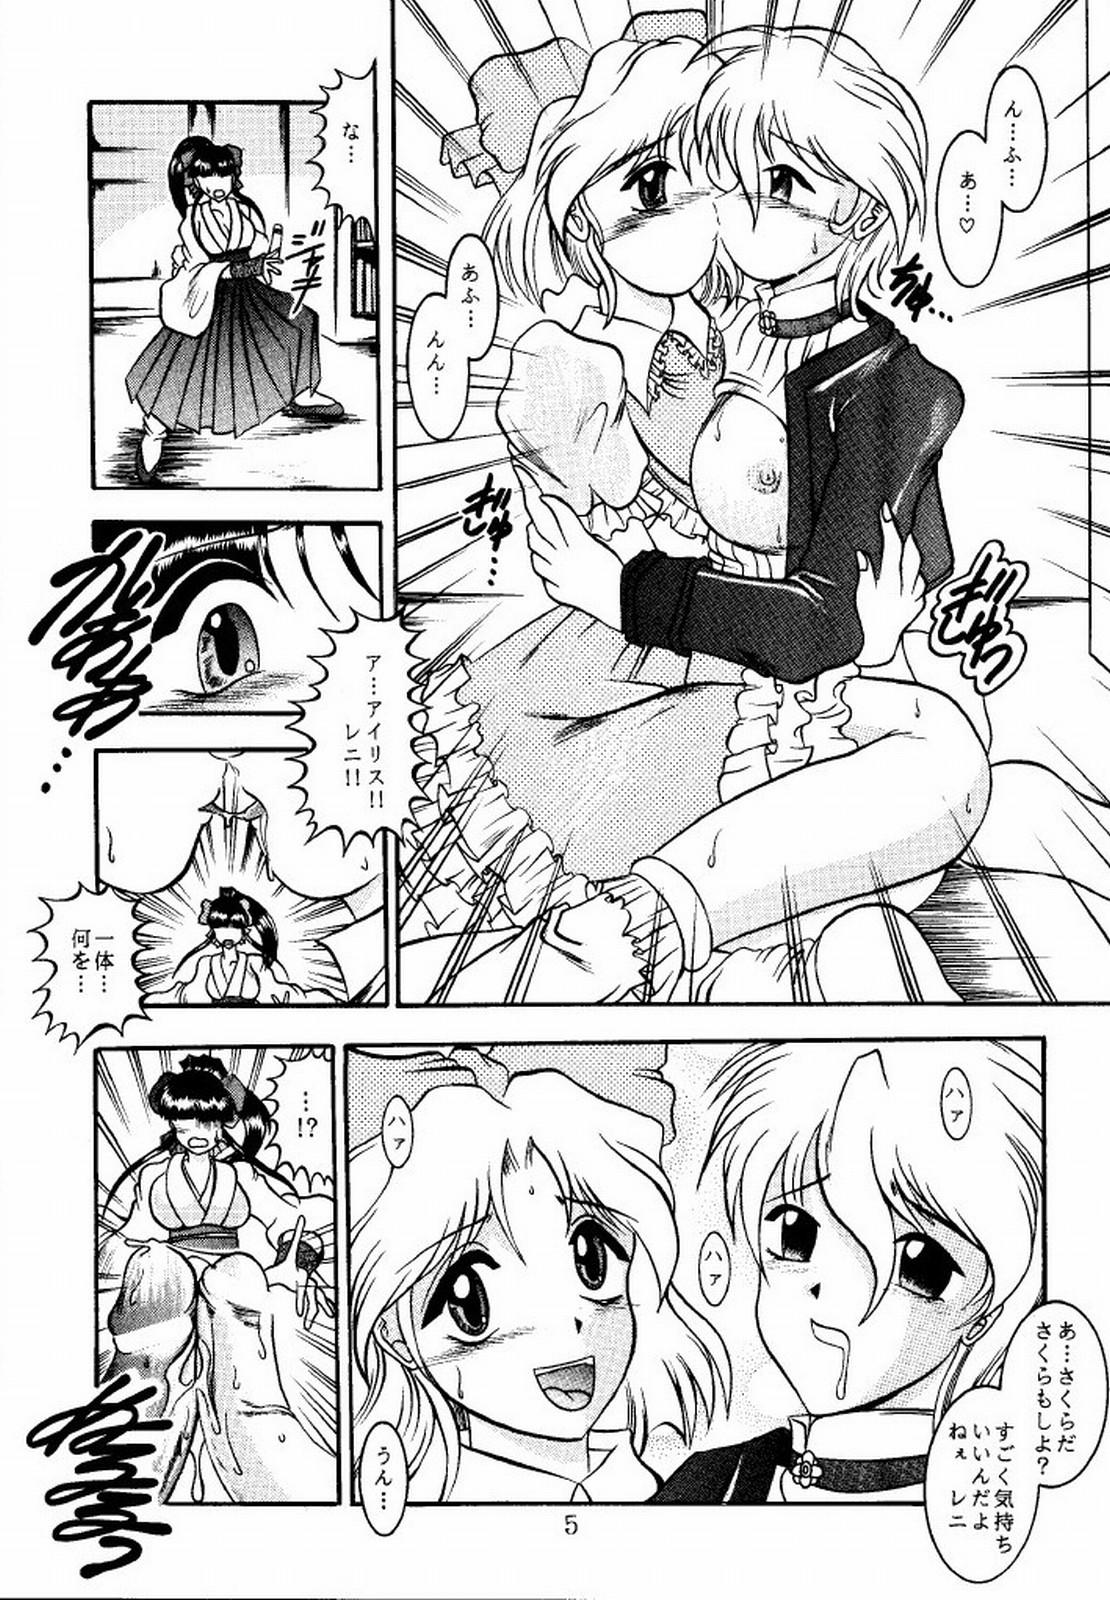 Cheerleader Eternal DROWSINESS - Sakura taisen Outdoors - Page 5